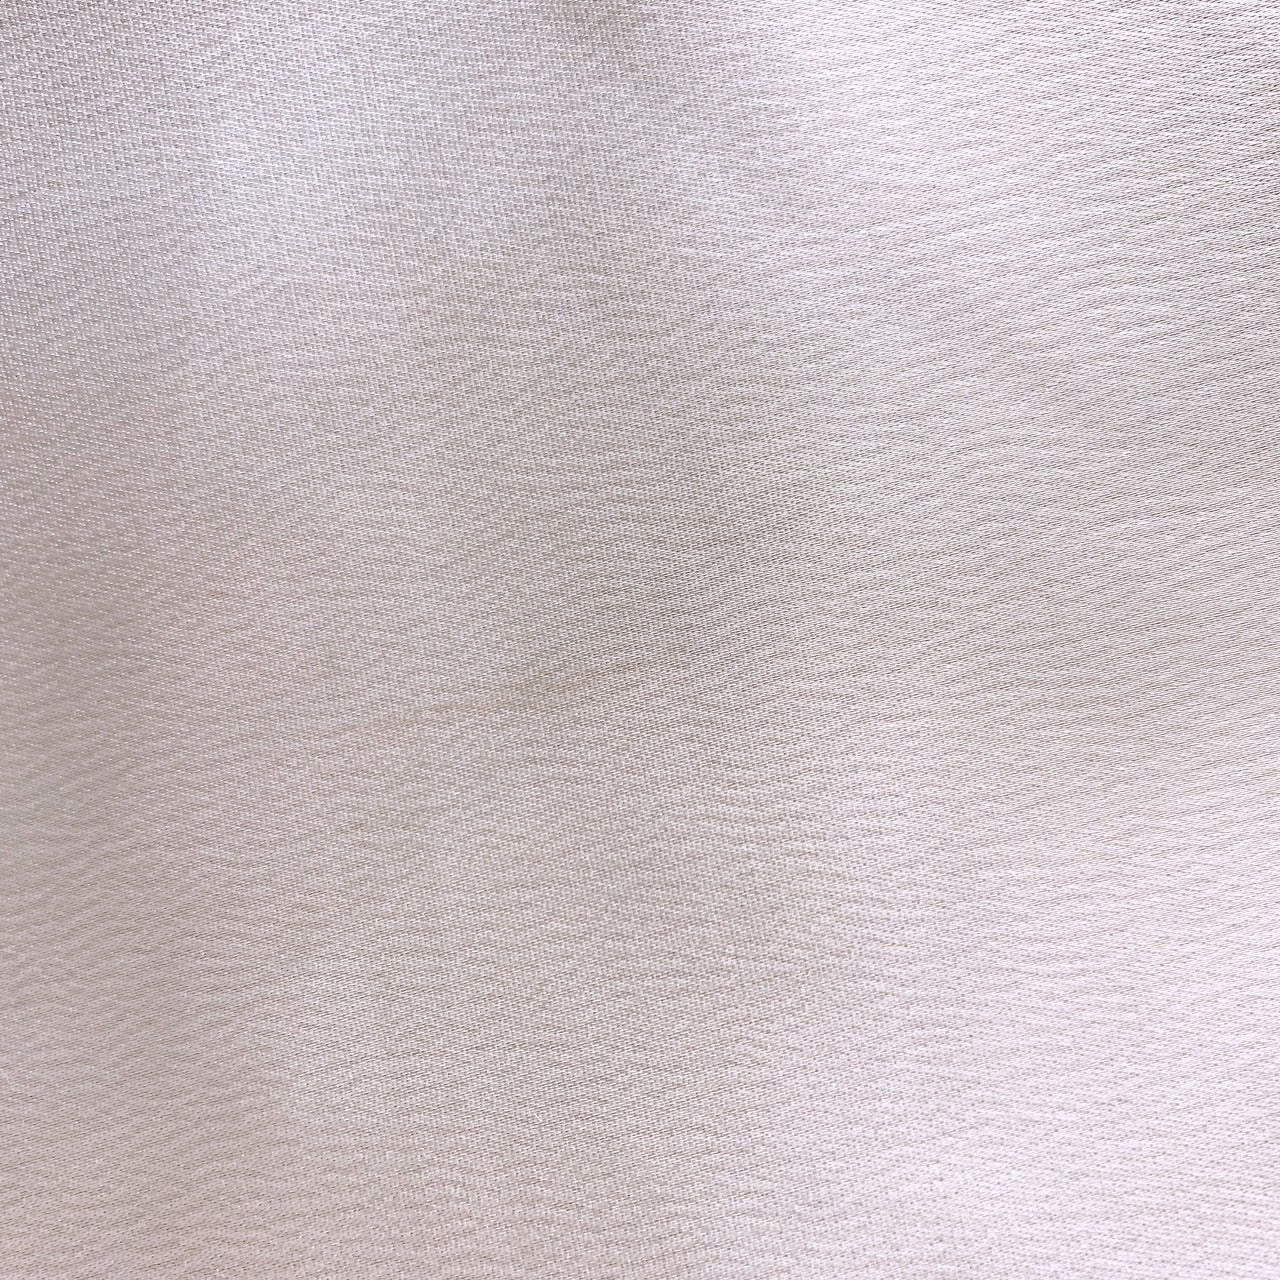 【26389】 ANDJ アンドジェイ ロングスカート サイズM ベージュ カジュアル 上品 かわいい 無地 サテン フレアースカート レディース